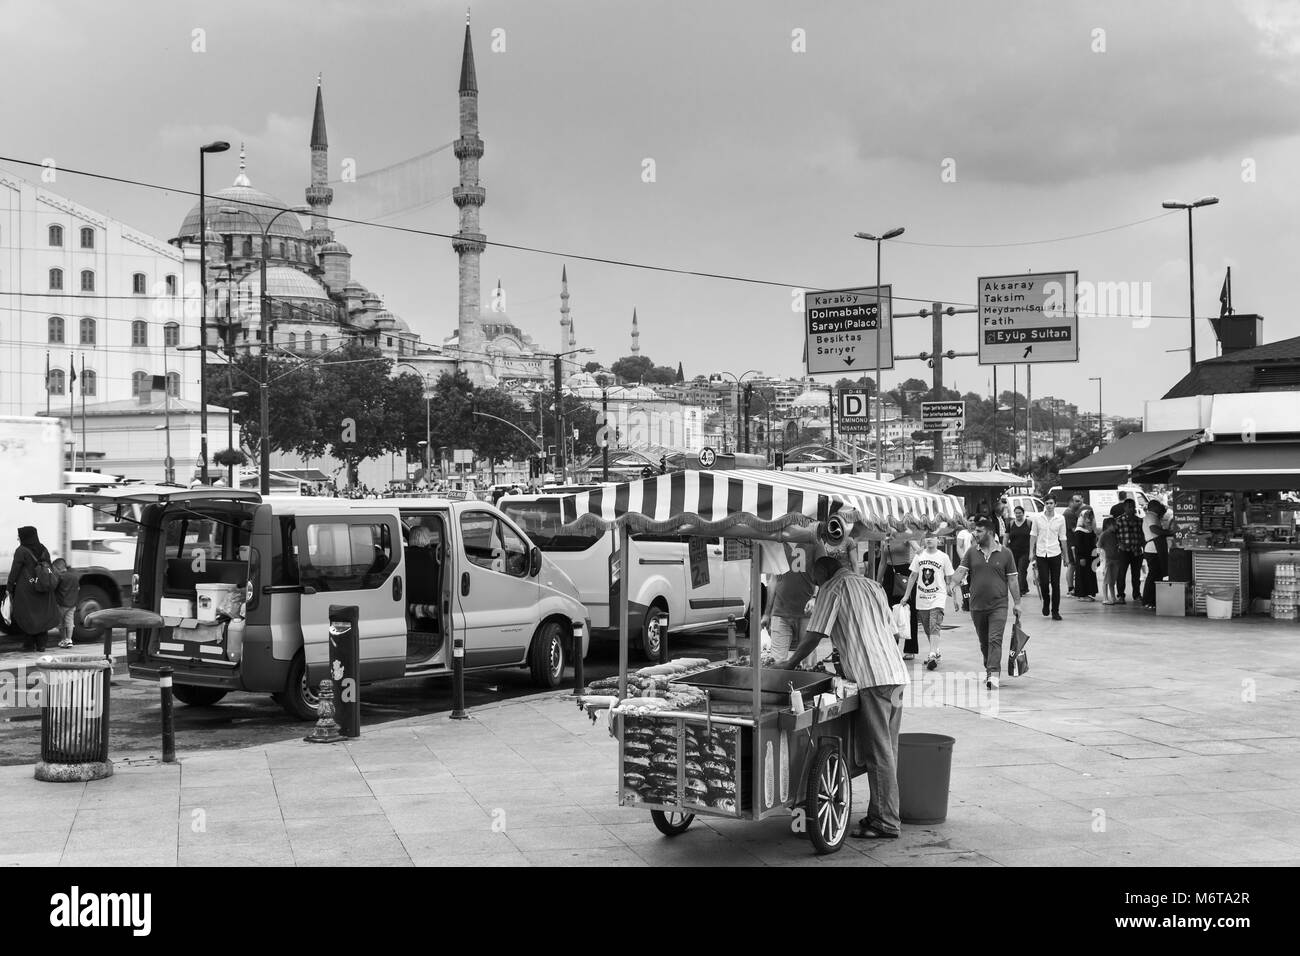 Istanbul, Turquie - 28 juin 2016 : Urban street food, panier avec des châtaignes grillées et du maïs dans la ville d'Istanbul, les gens ordinaires à pied à proximité. Whi et noir Banque D'Images